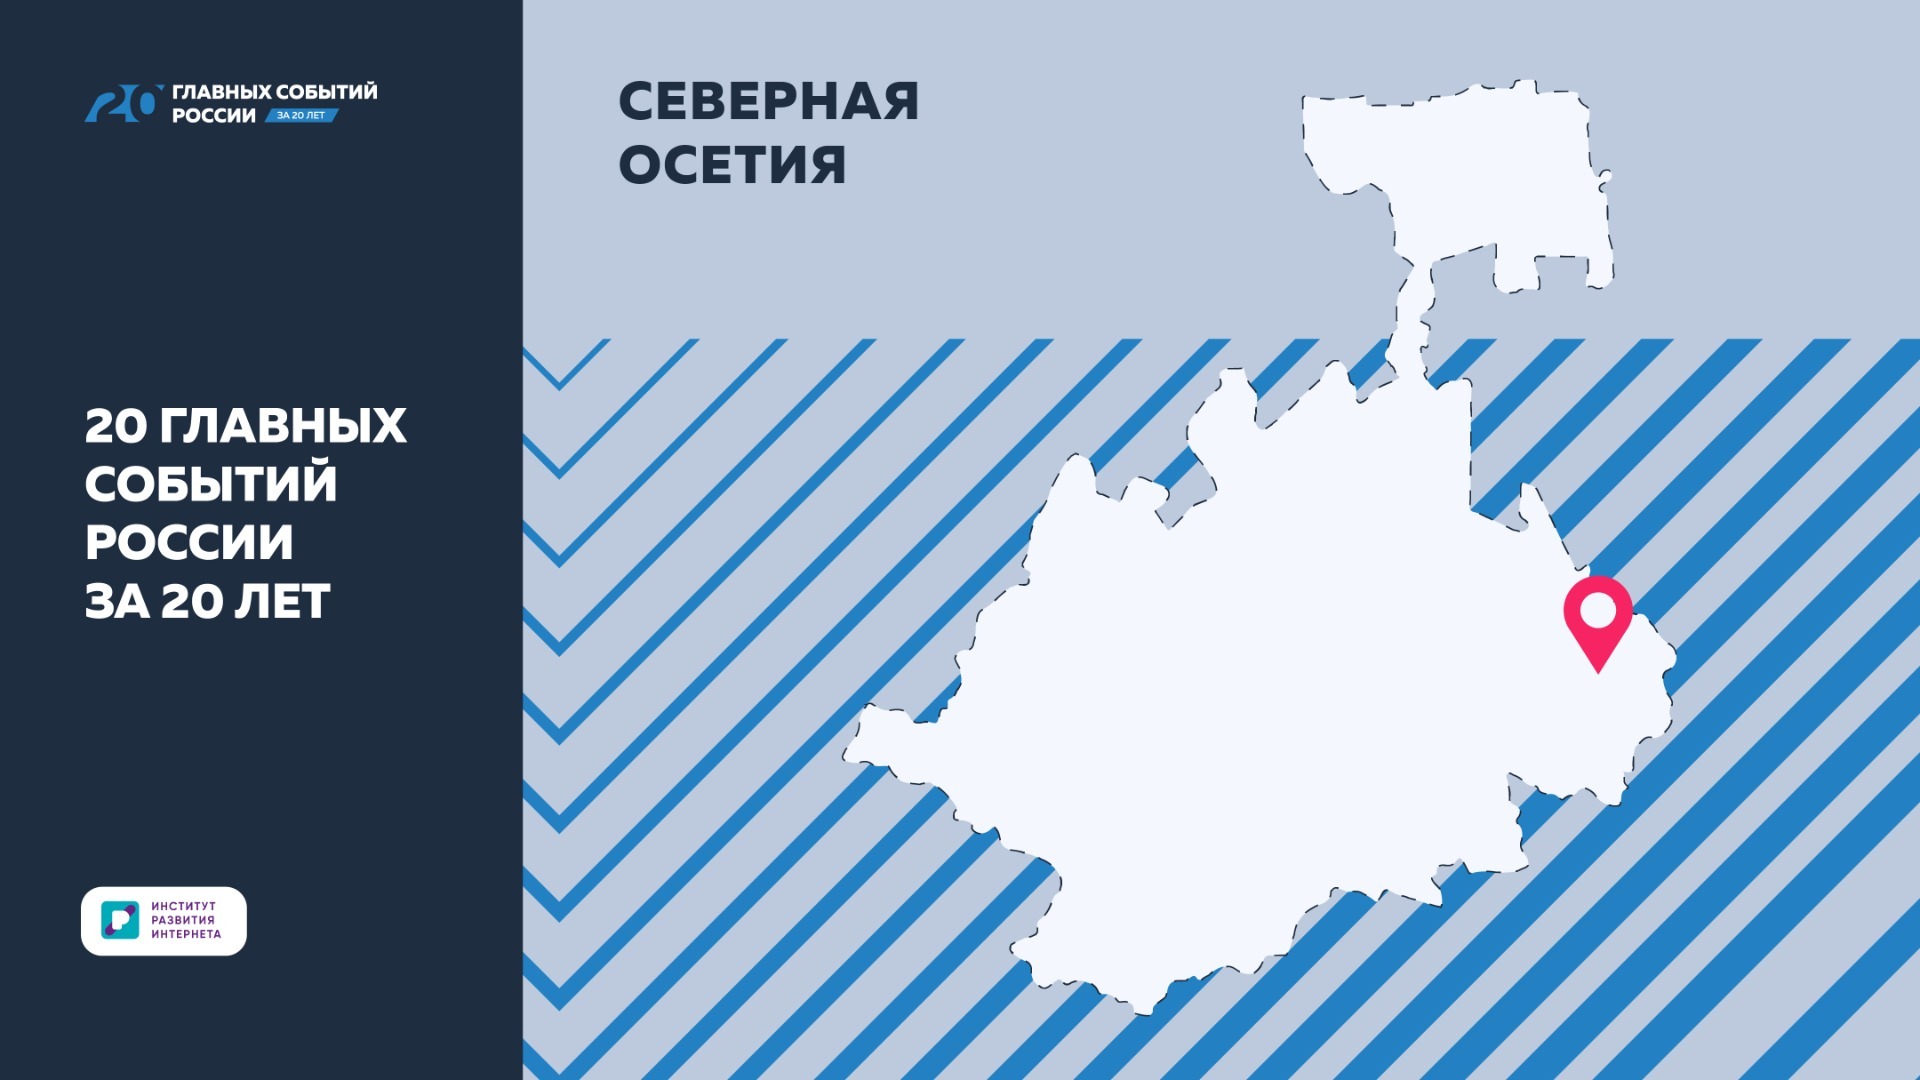 ИРИ: Северная Осетия внесла большой вклад в «20 главных событий России за 20 лет»